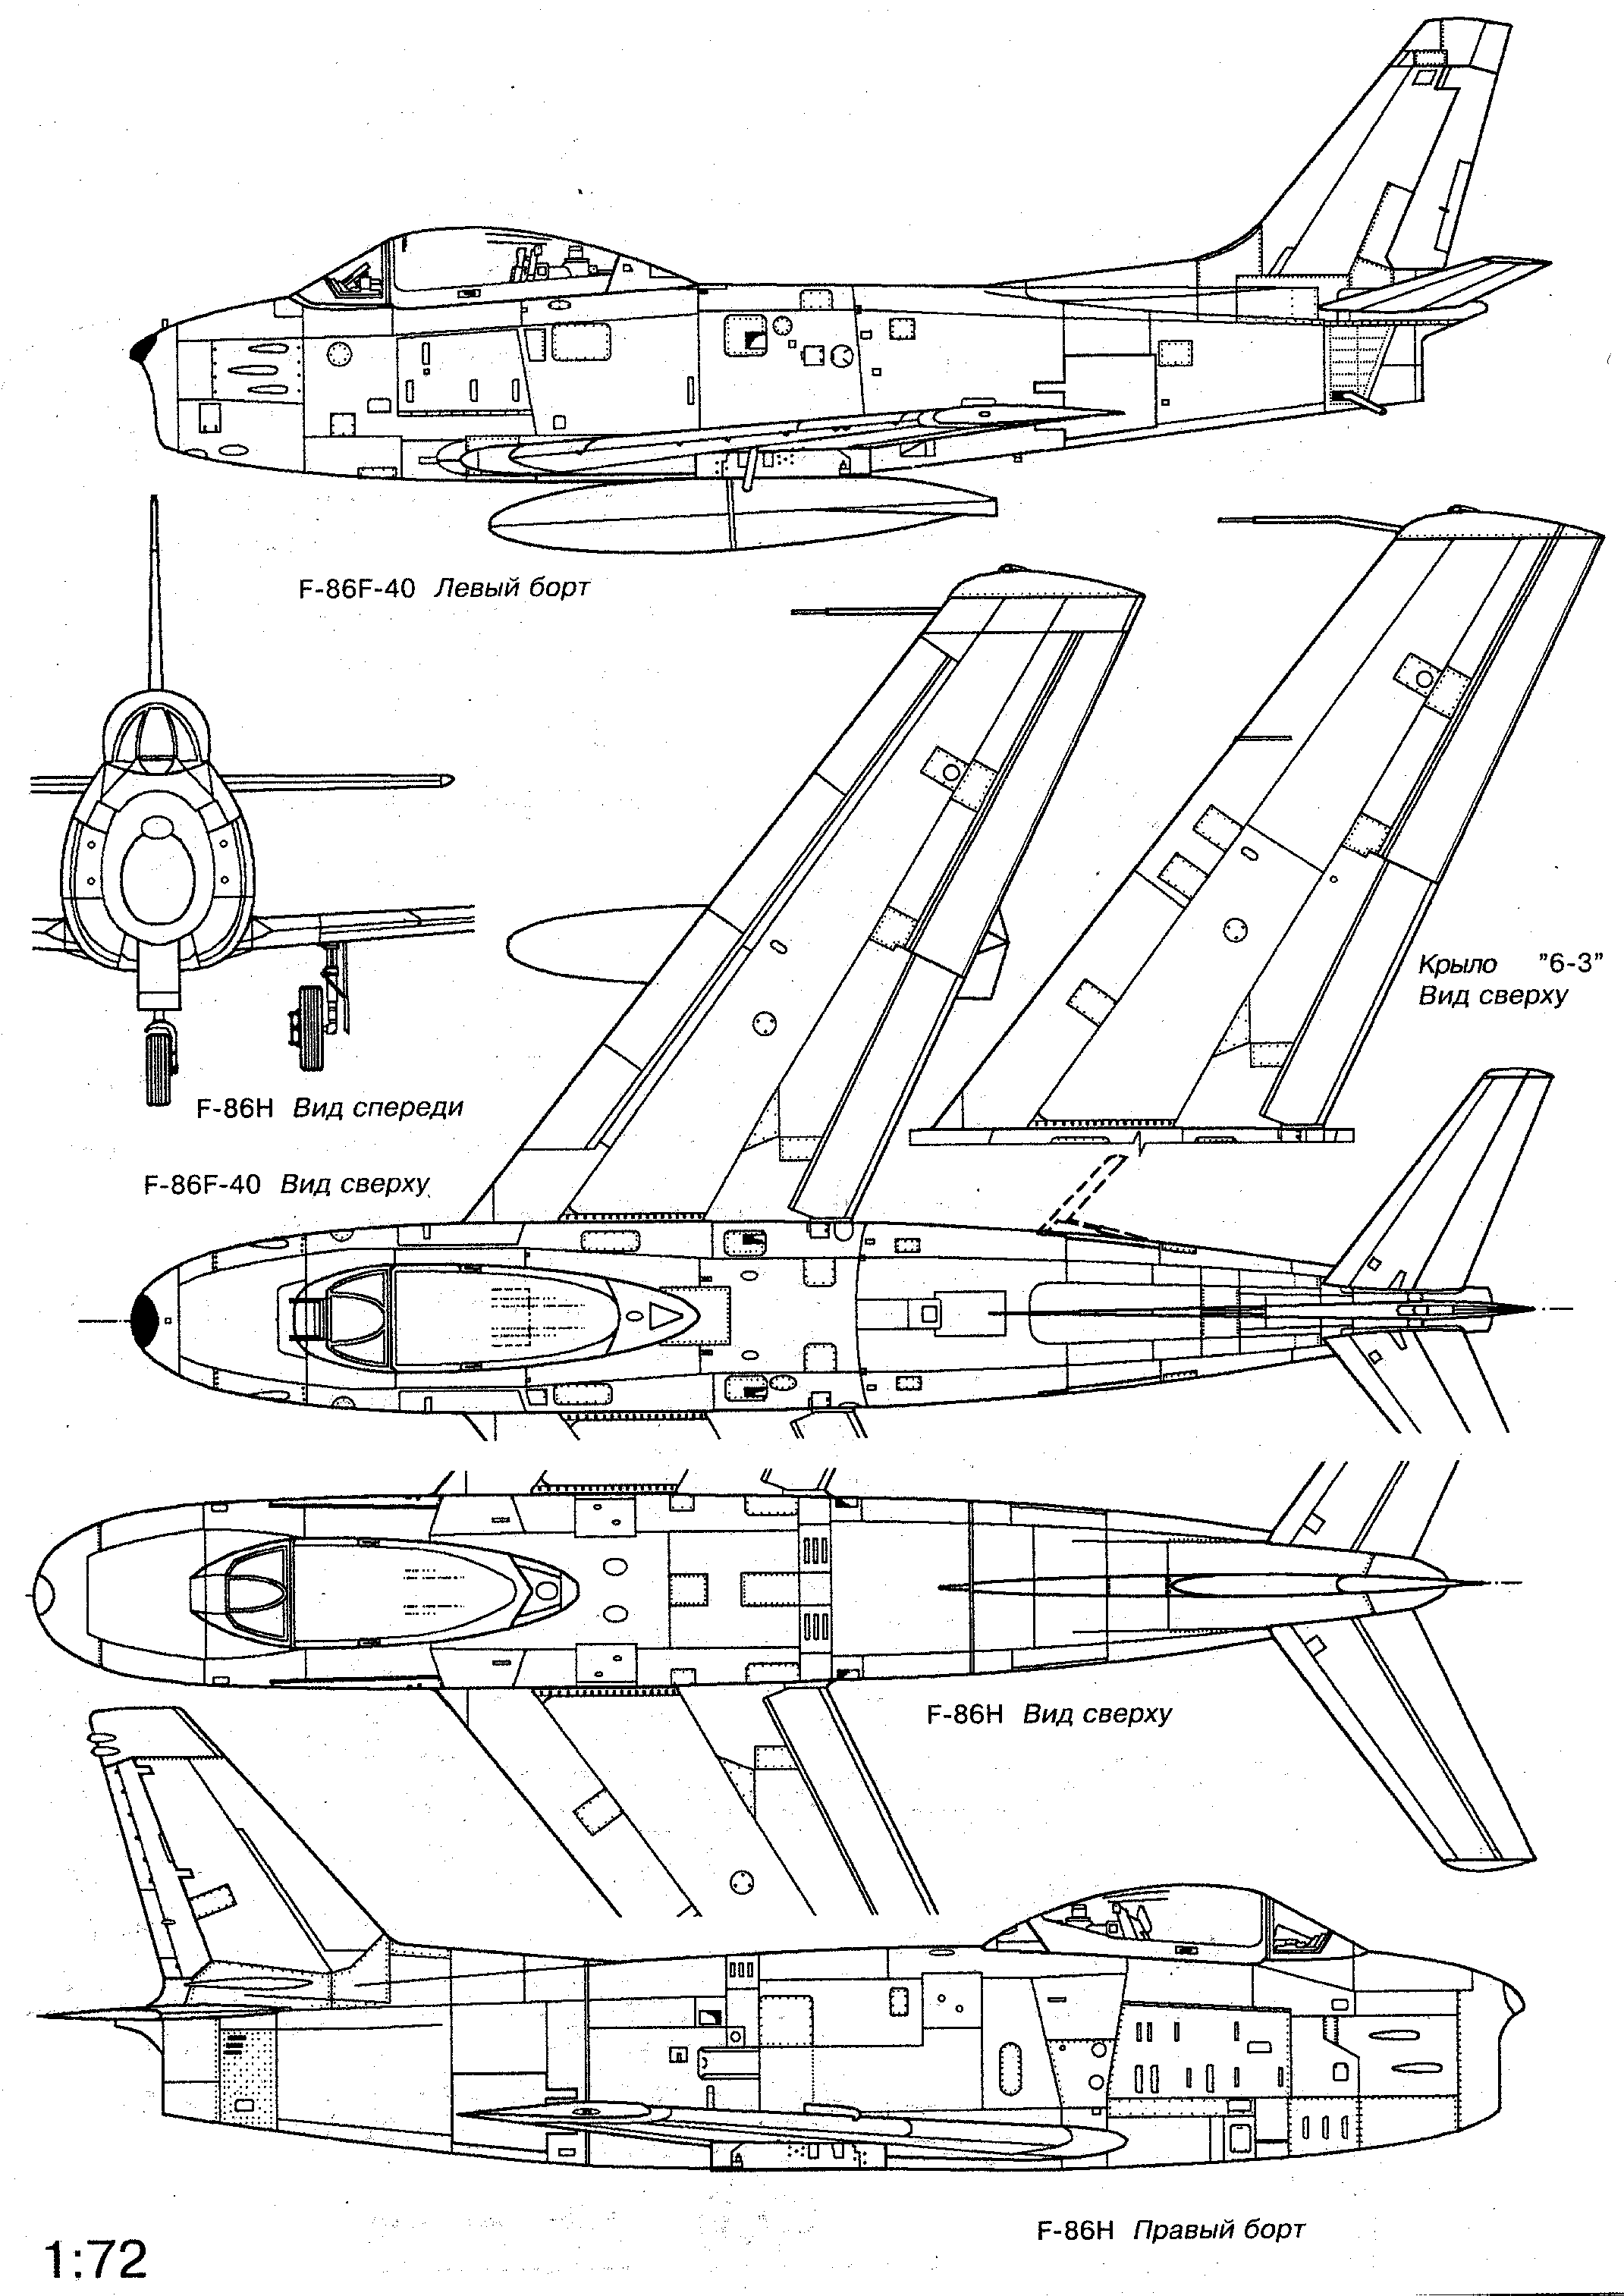 F-86 Sabre blueprint